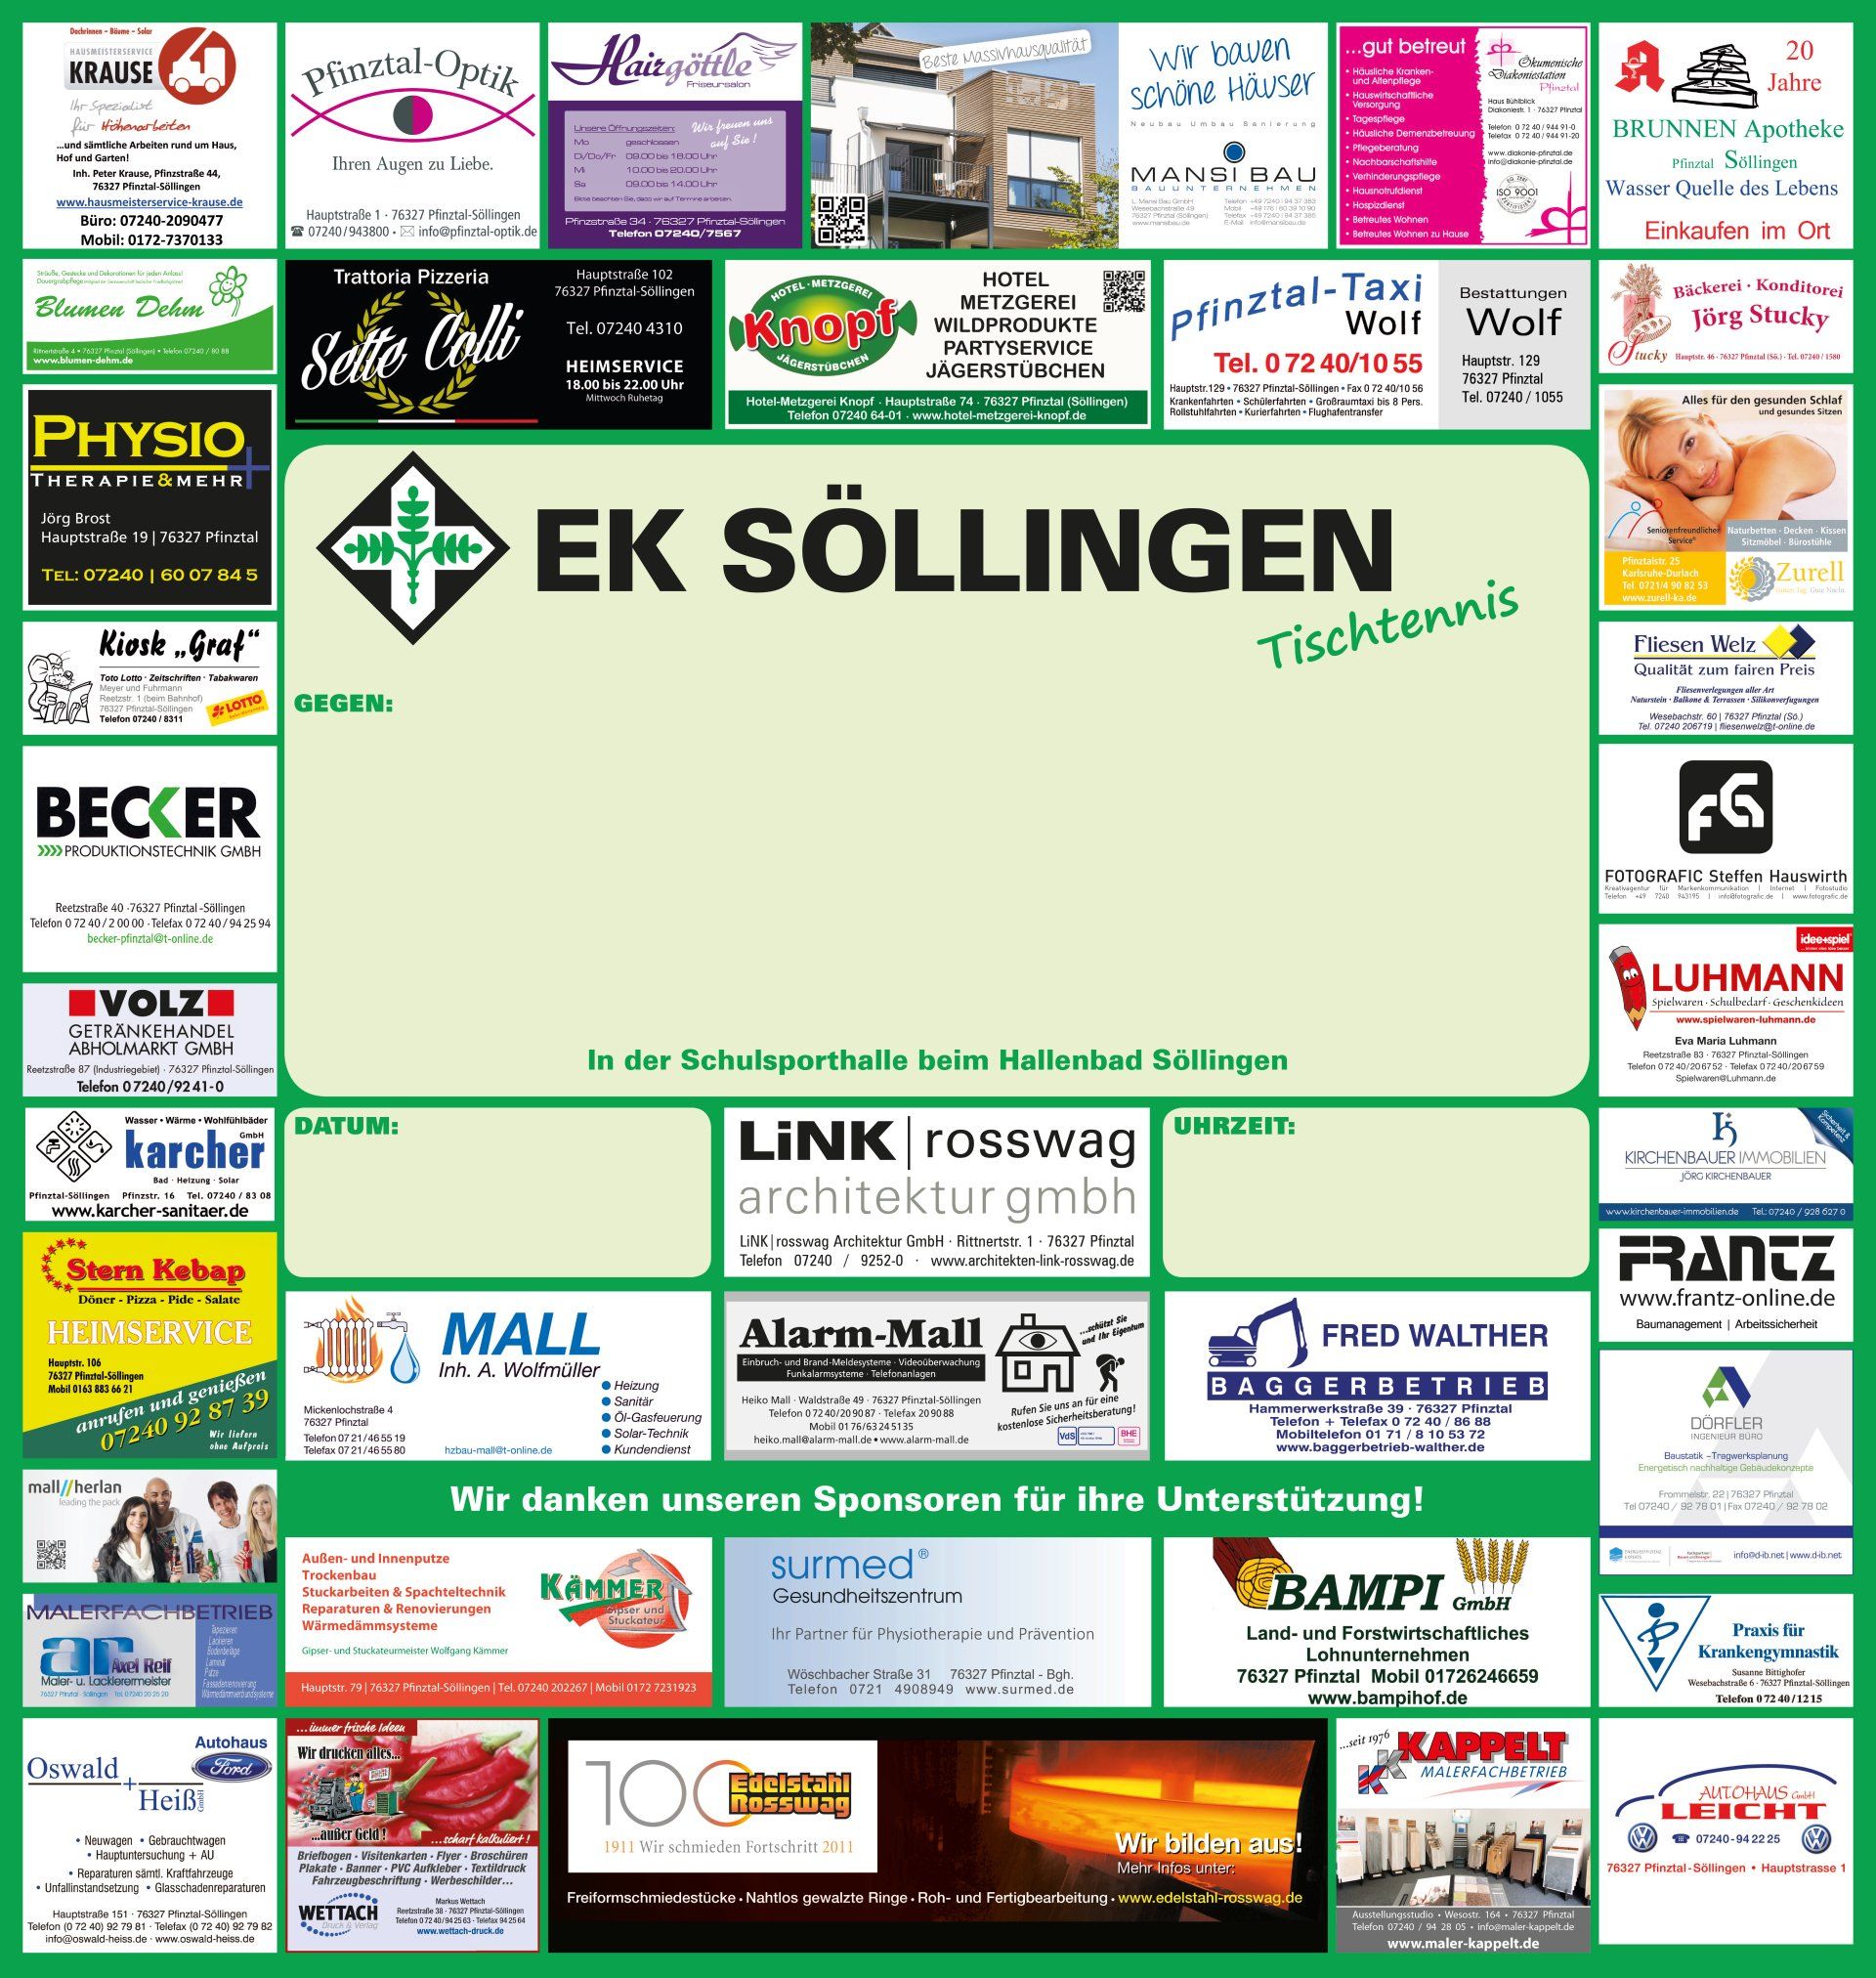 Sponsoren des EK Söllingen